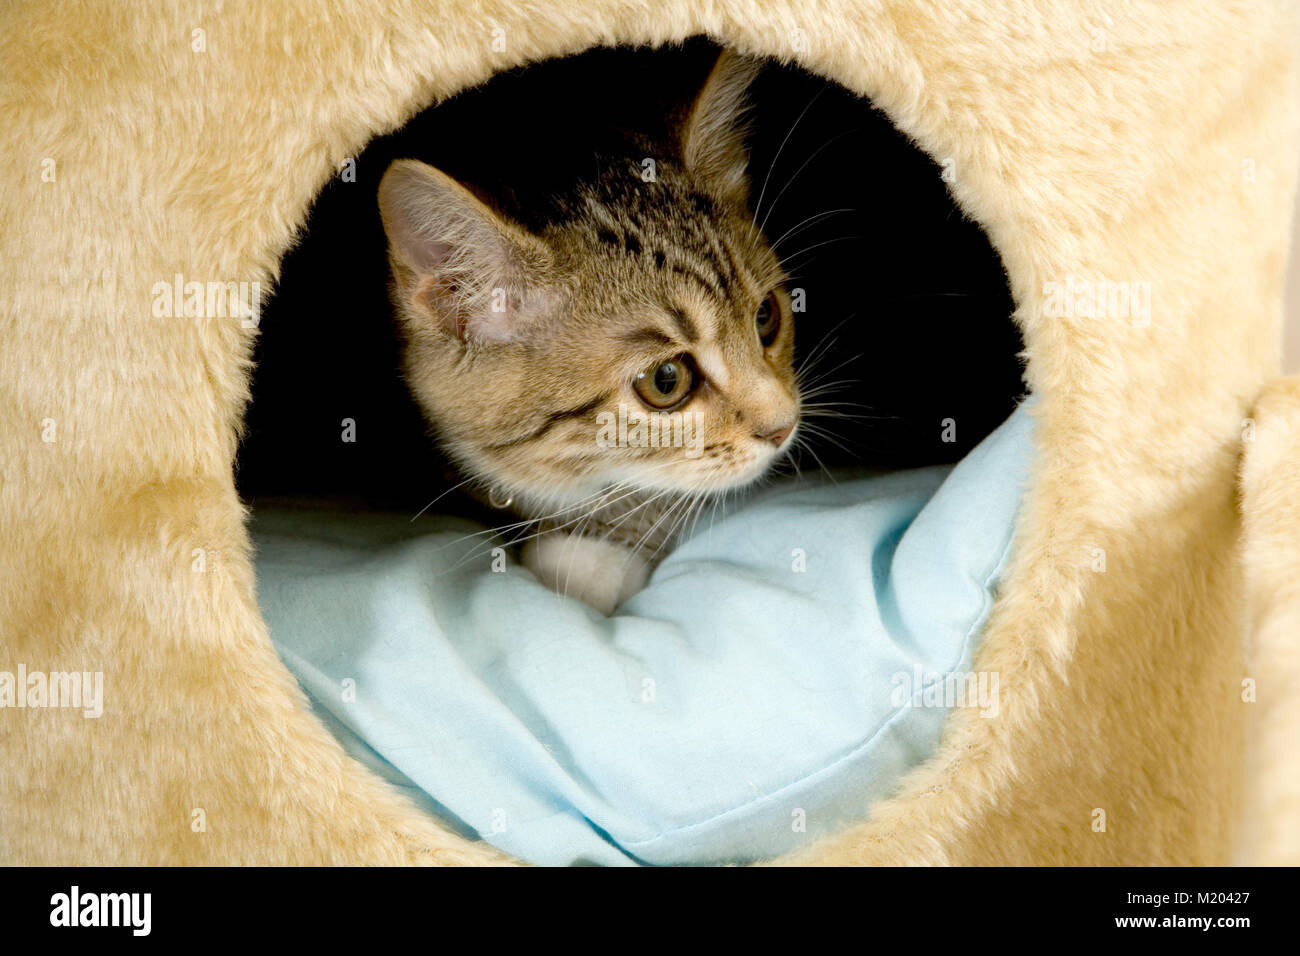 Cautious kitten Stock Photo